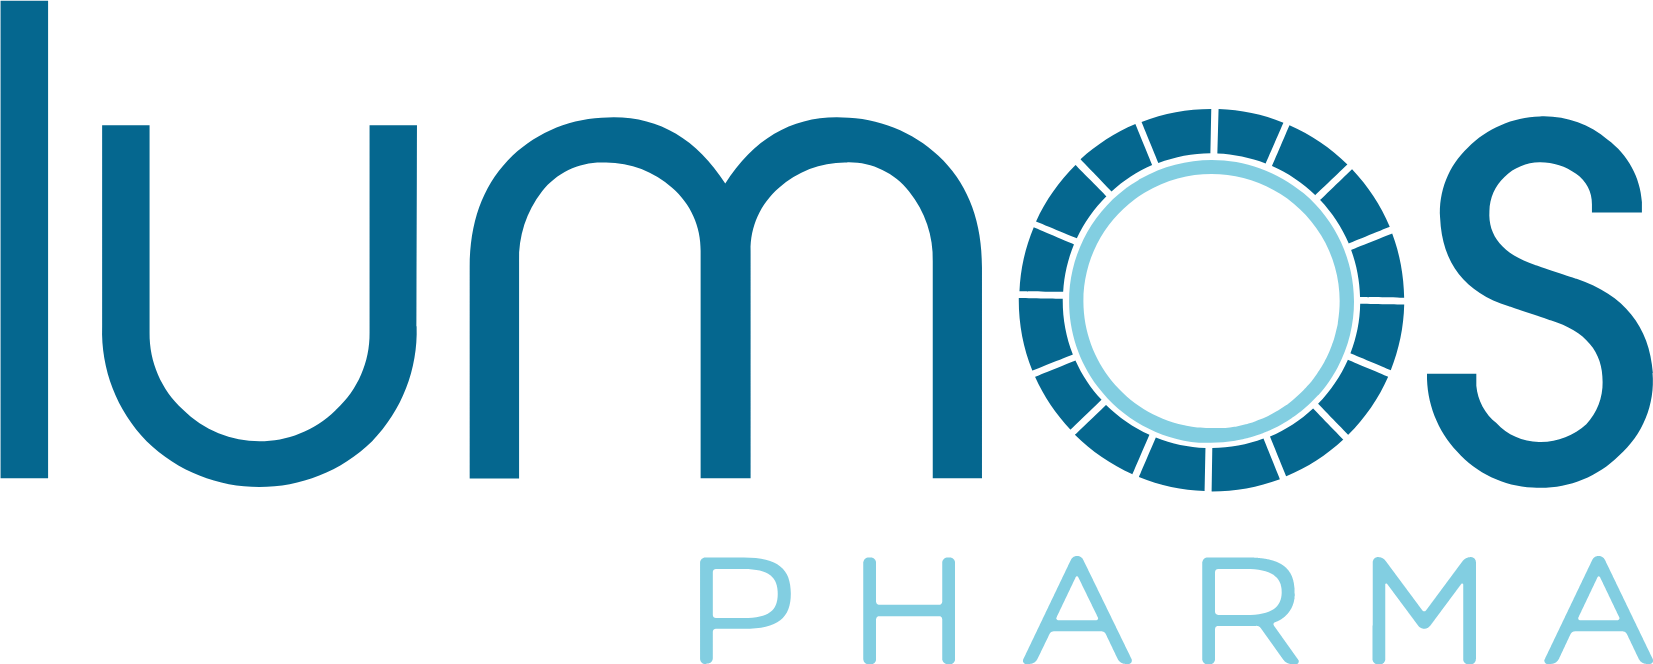 Lumos Pharma logo large (transparent PNG)